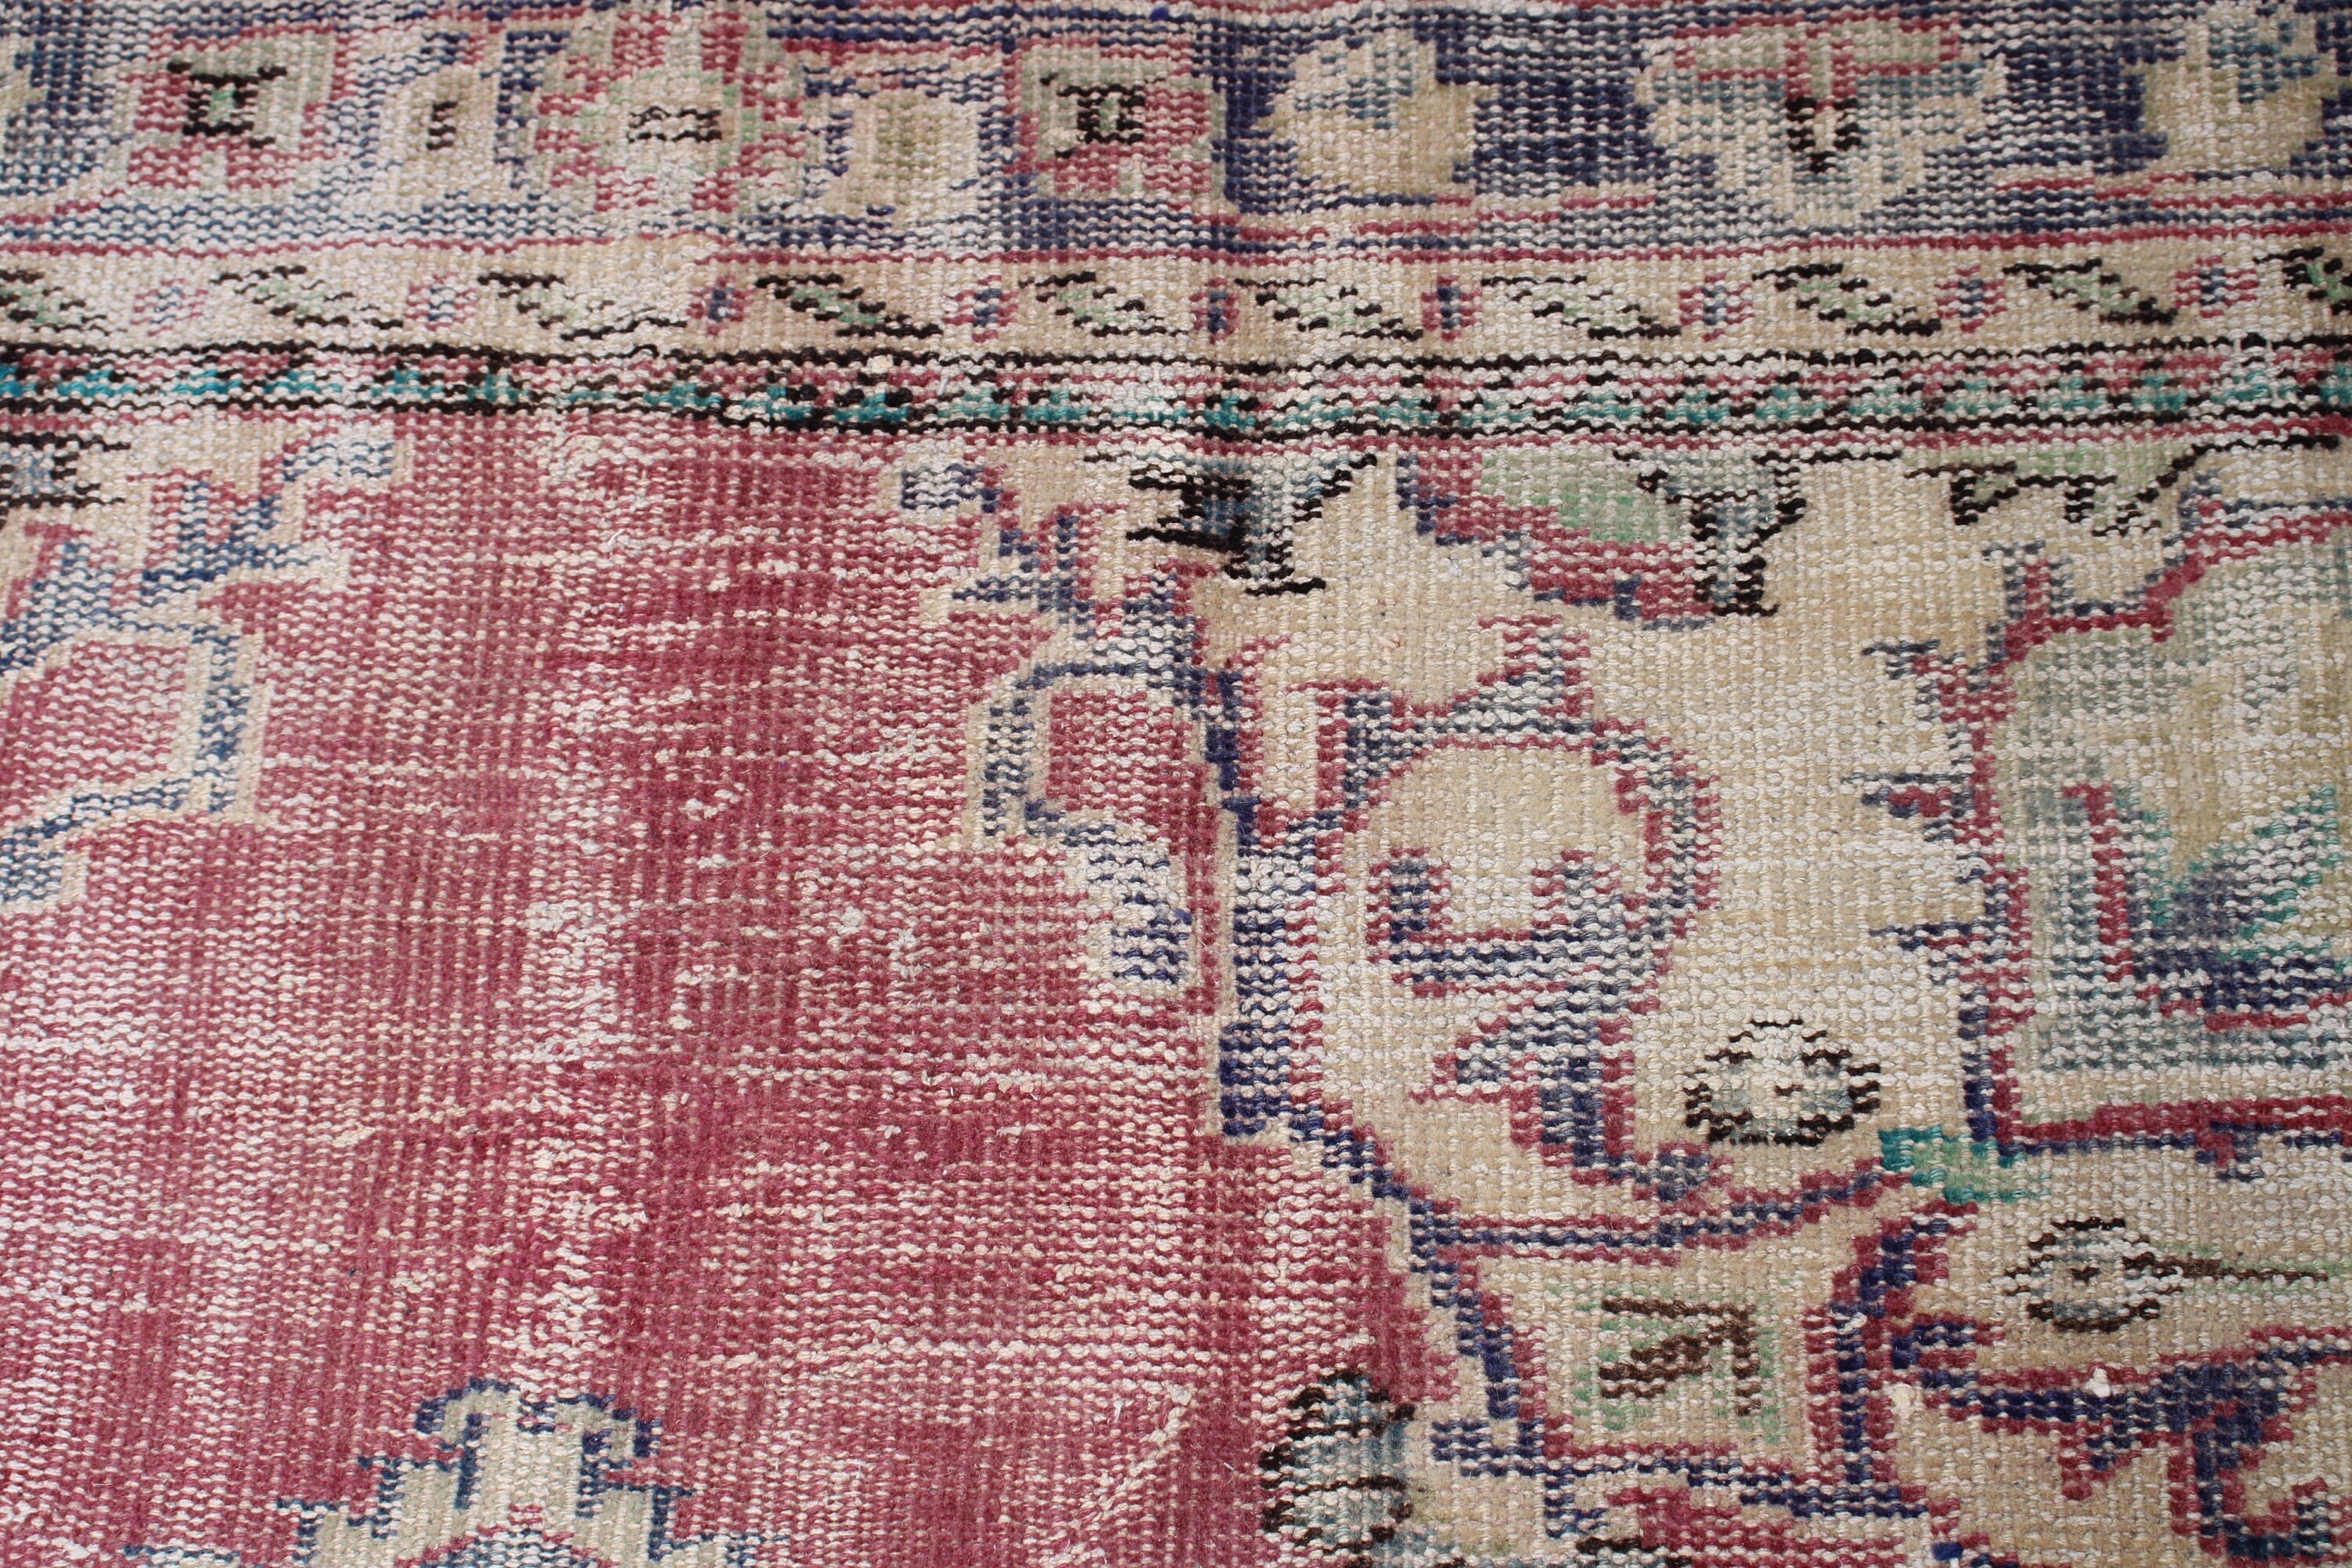 Oriental Rug, Wool Rugs, 2x4.3 ft Small Rugs, Art Rug, Entry Rug, Vintage Rug, Purple Wool Rugs, Turkish Rugs, Rugs for Entry, Door Mat Rug